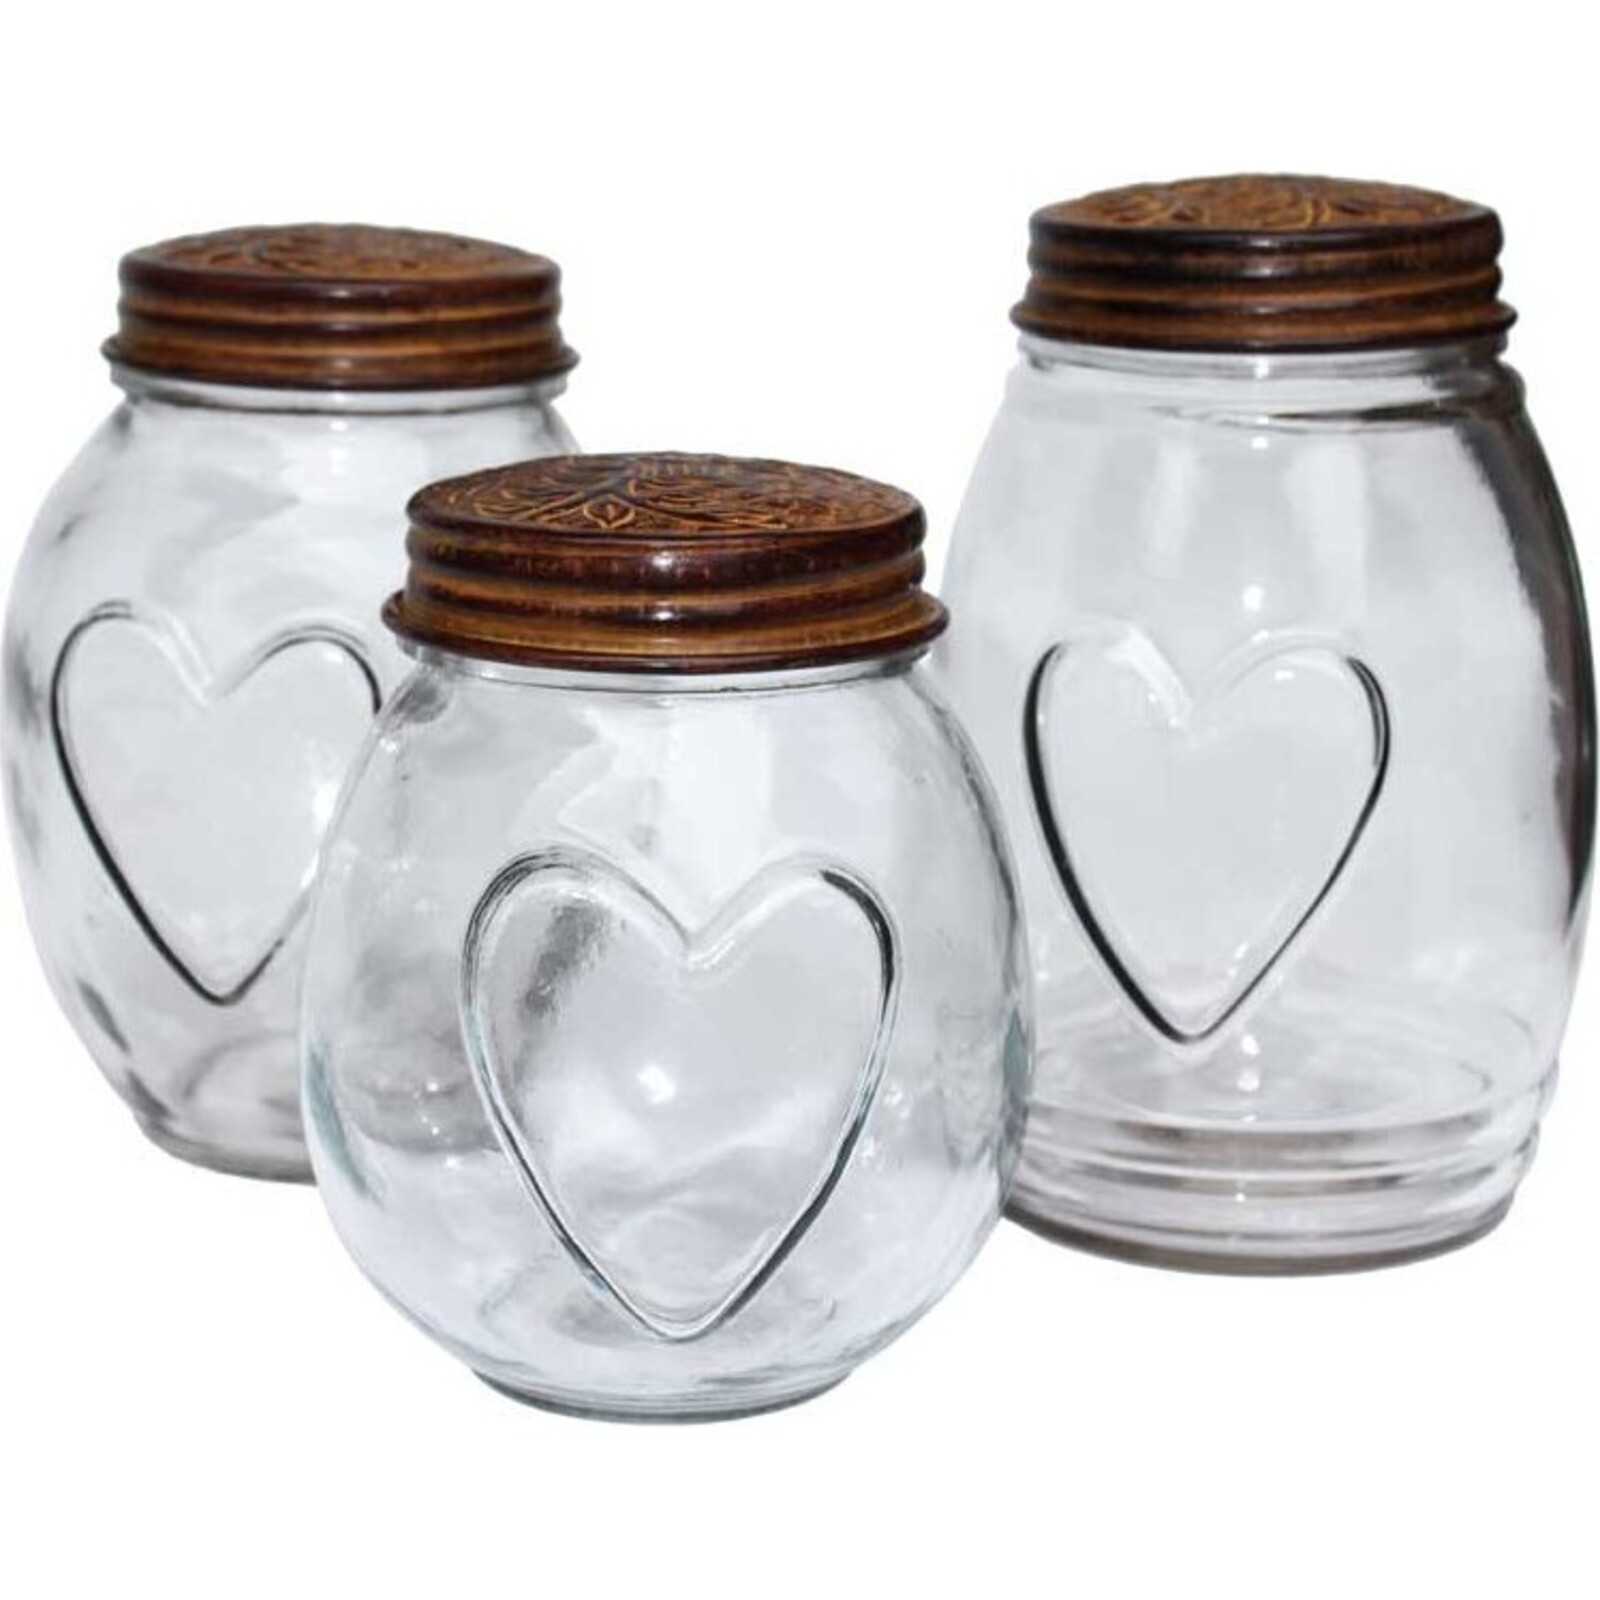 Glass Jar - Chetai Round